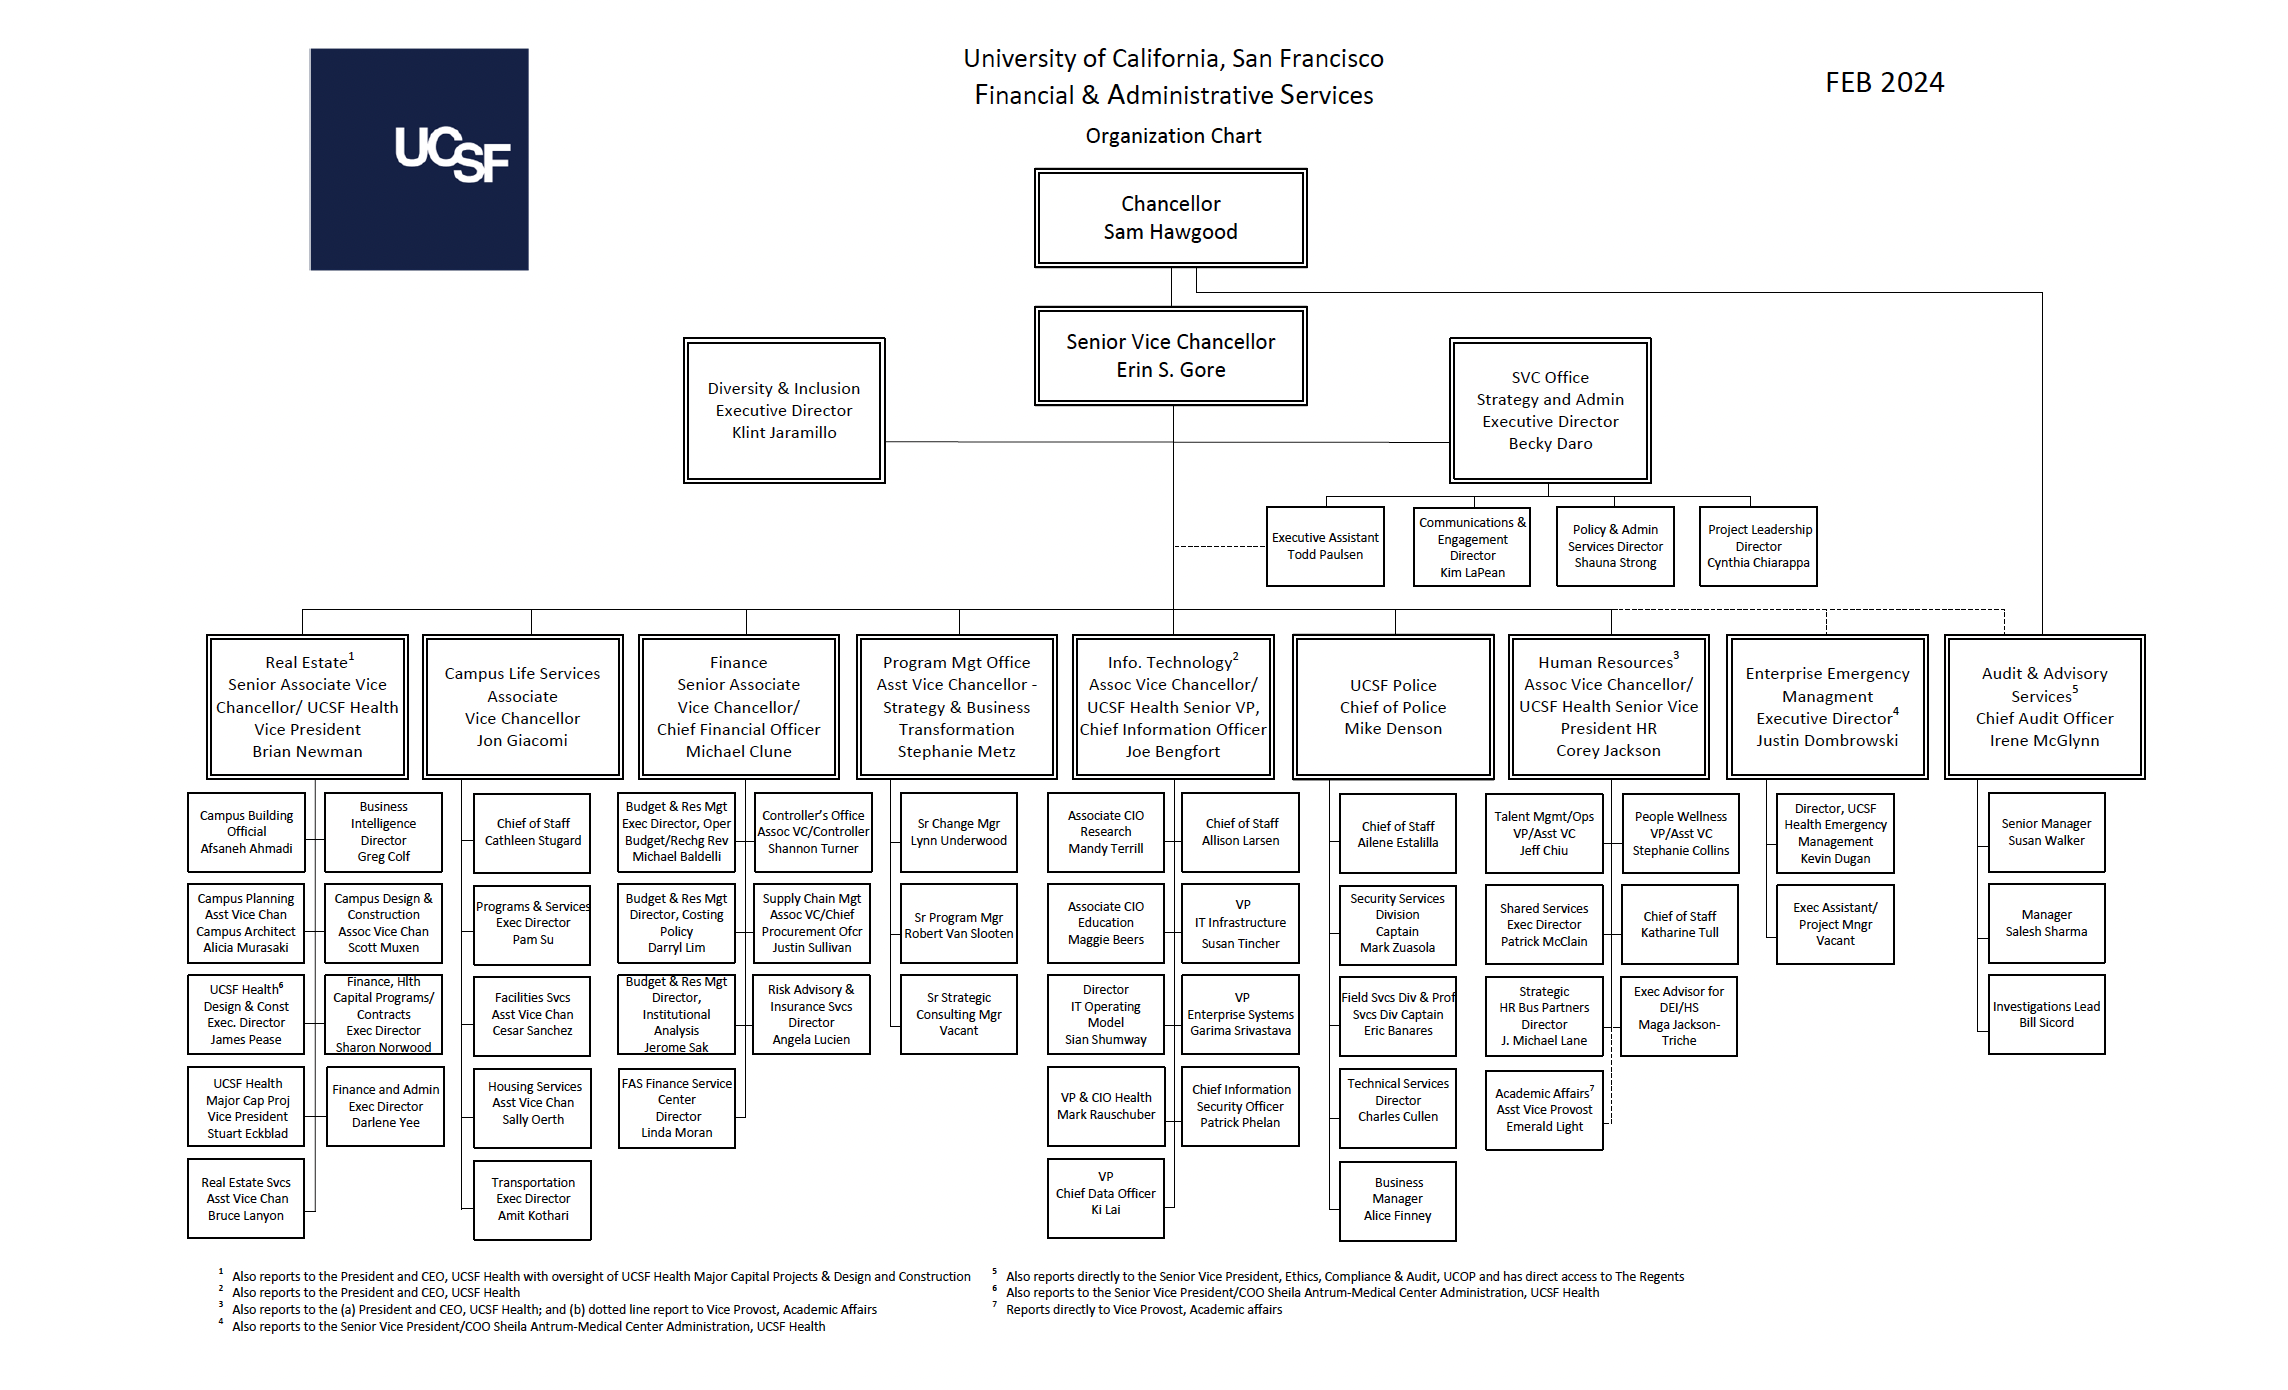 FAS Organization Chart